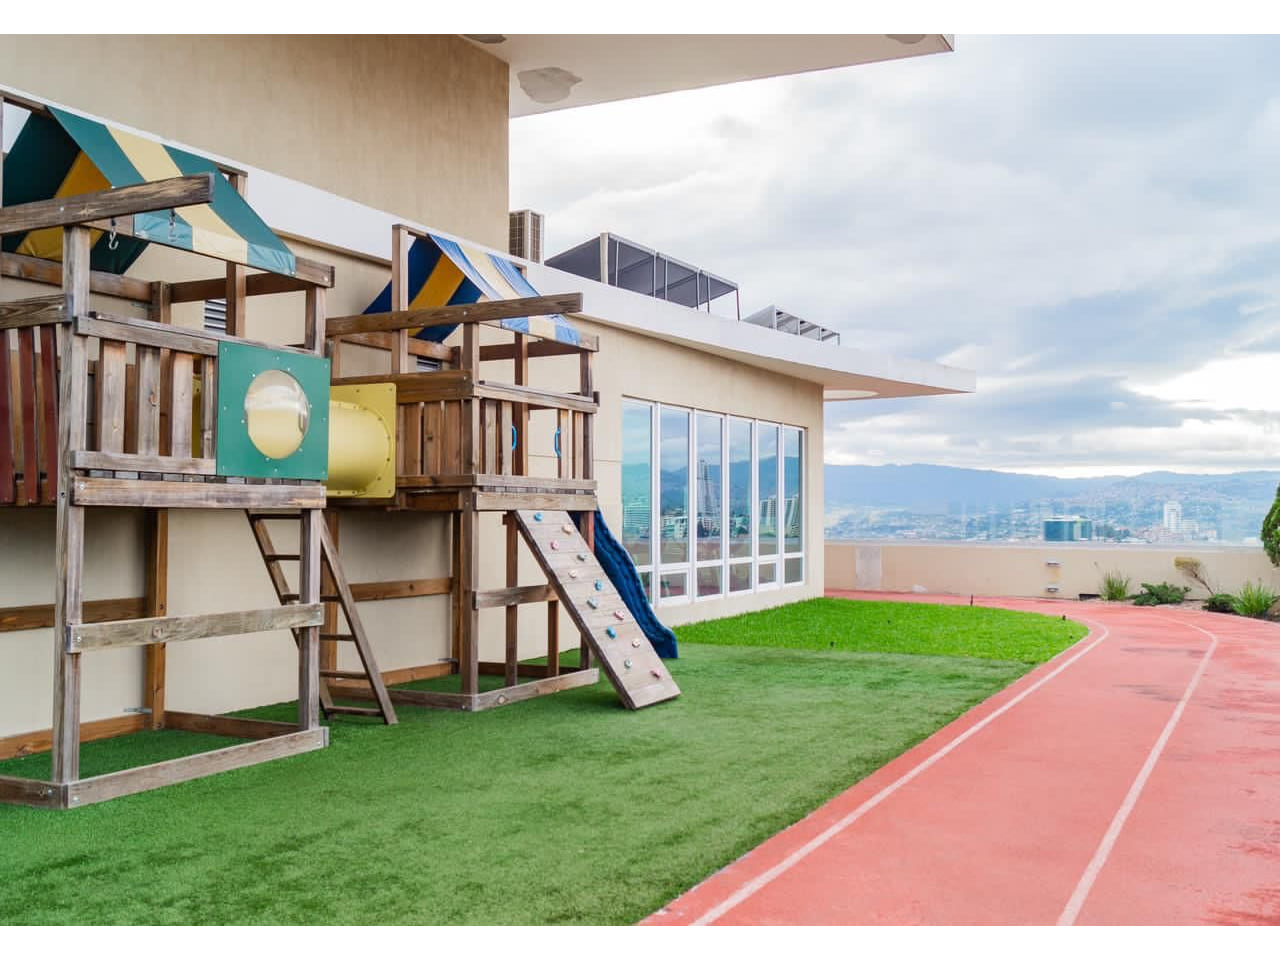 Área de terraza en la parte superior del edificio, cuenta con área verde, área de juego para niños, pista para correr.